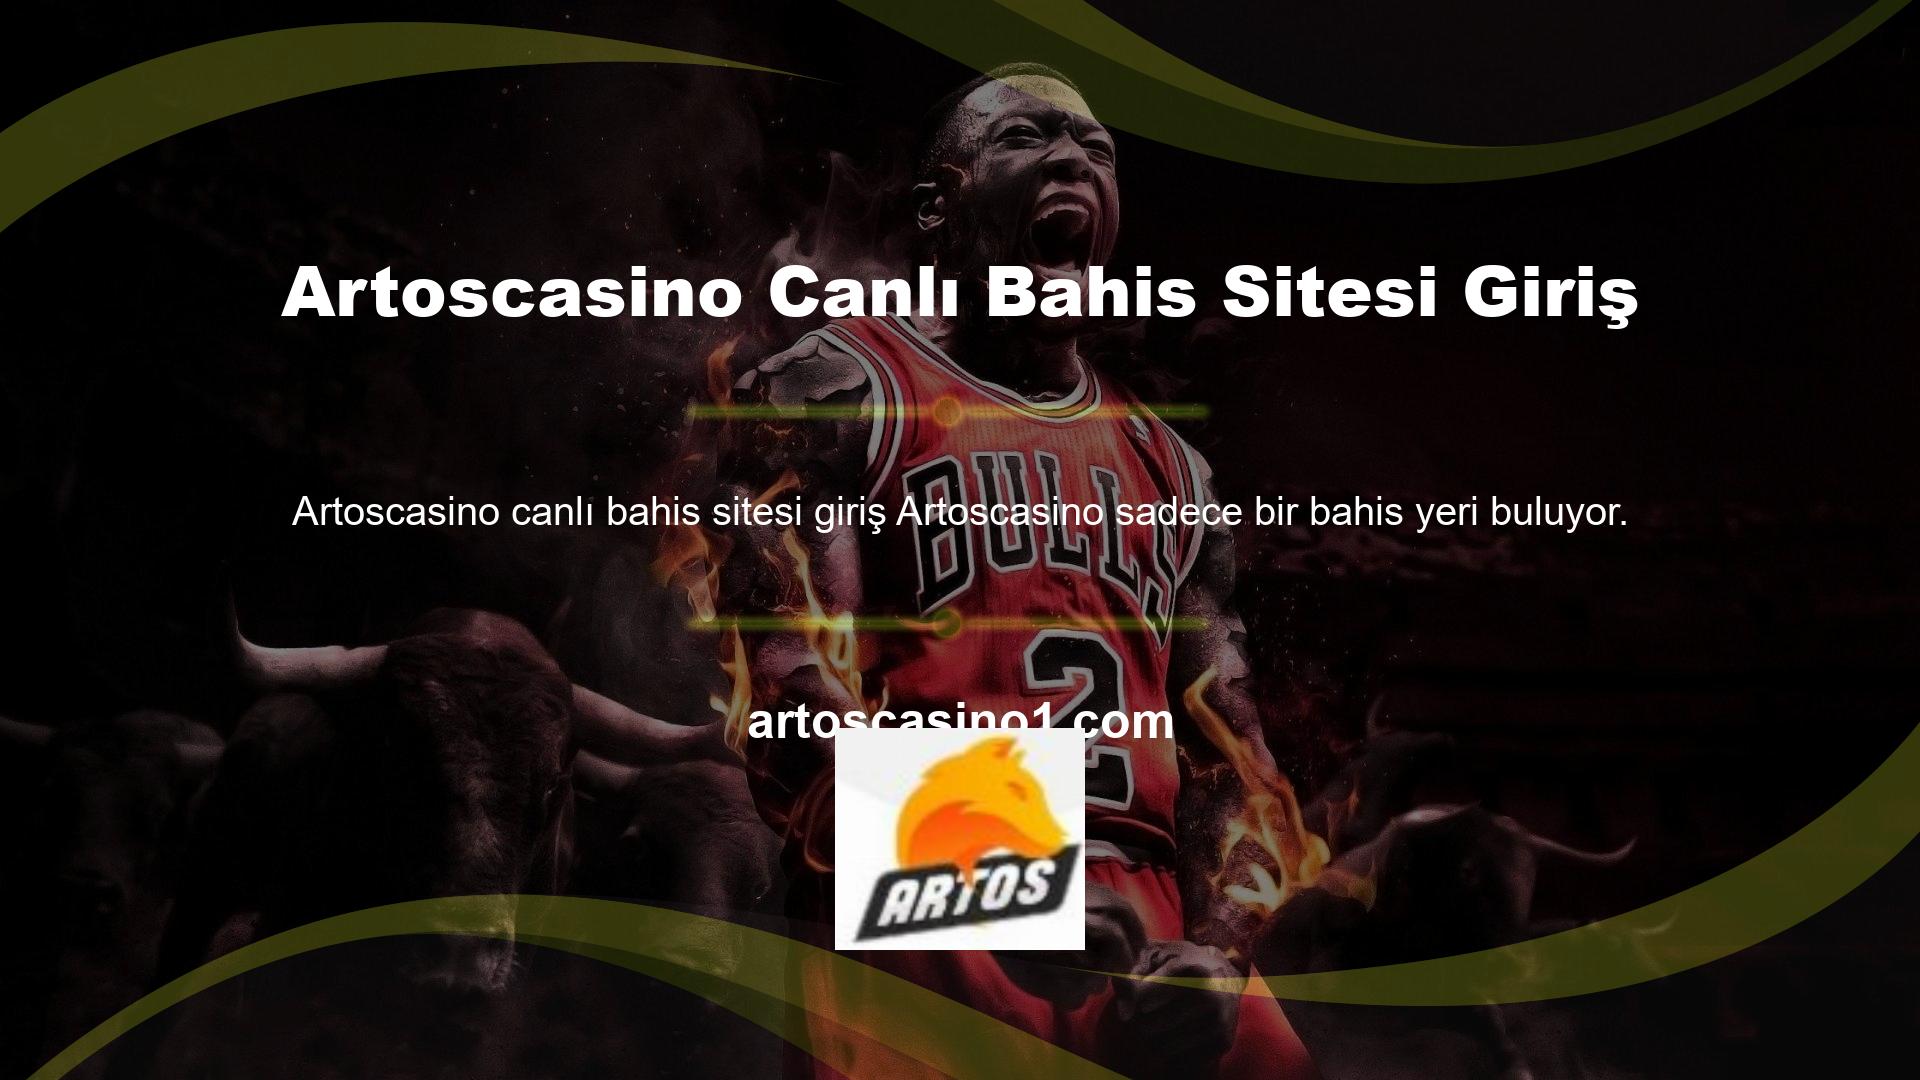 Casinoda oynamak isteyenler için Artoscasino web sitesi oldukça kaliteli bir hizmet sunmaktadır